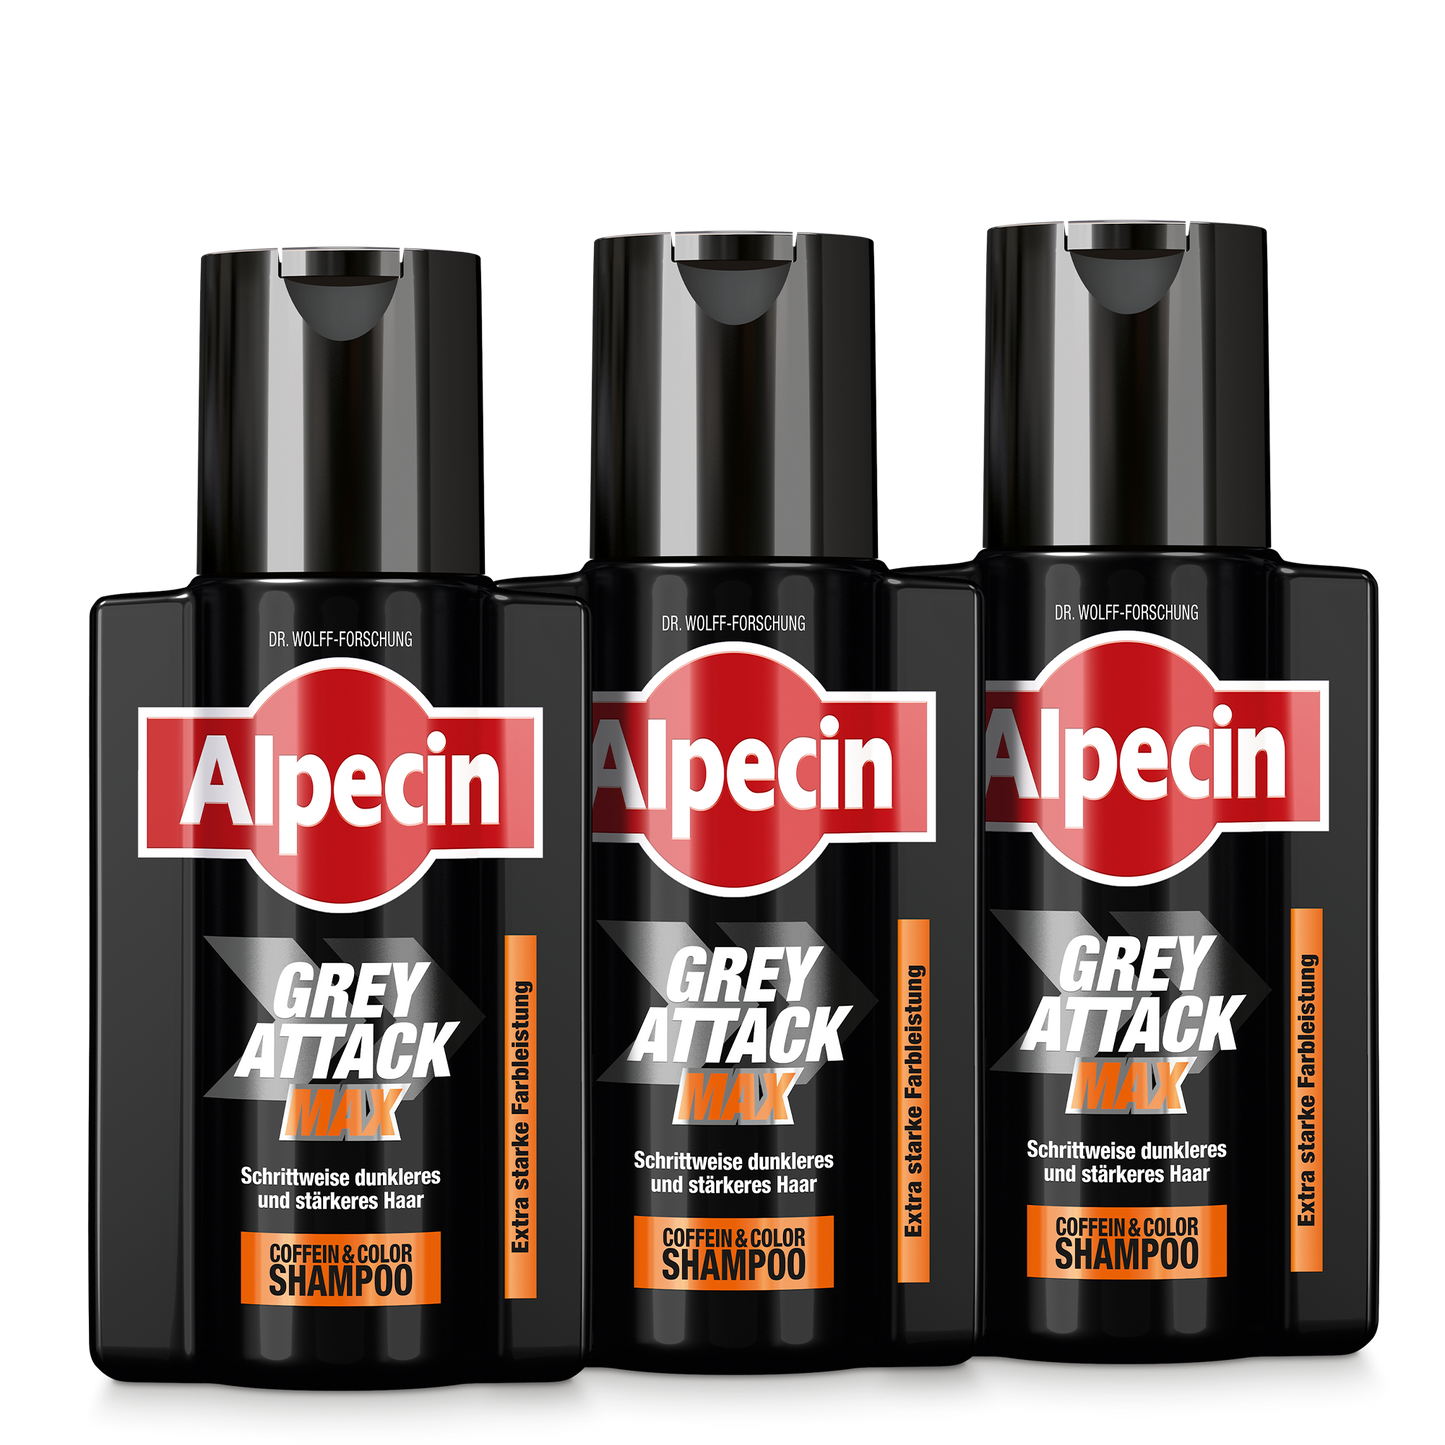 3 Flaschenabbildung des Grey Attack MAX mit dem Produktnamen, der Marke Alpecin und zusätzliche Benamungen des Shampoos